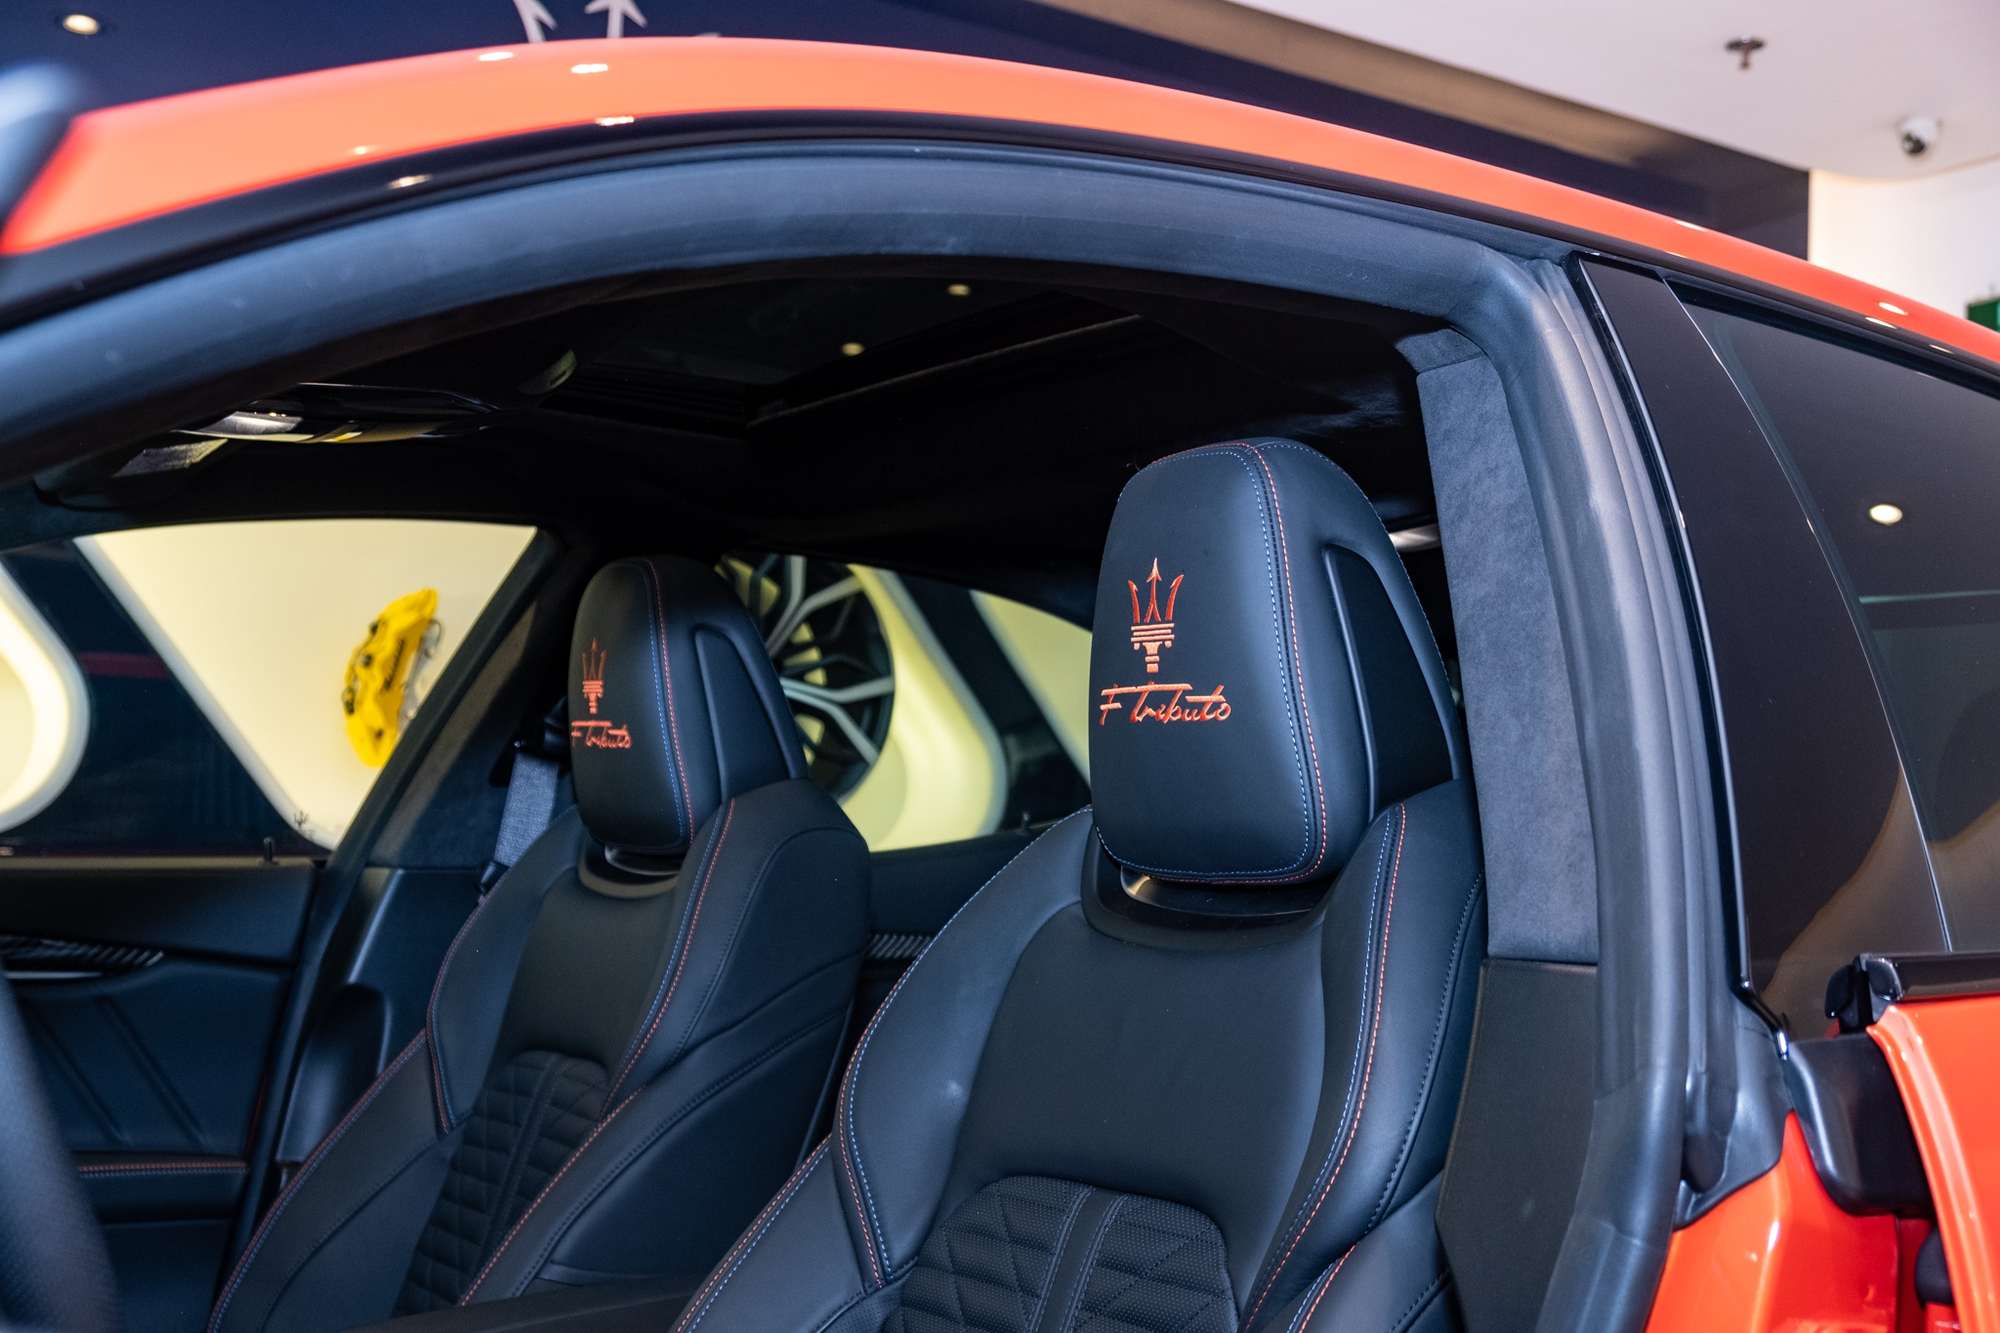 Maserati Ghibli F Tributo độc nhất Việt Nam giá hơn 9 tỷ đồng: Màu sơn độc quyền, máy V6 mạnh 430 mã lực- Ảnh 8.